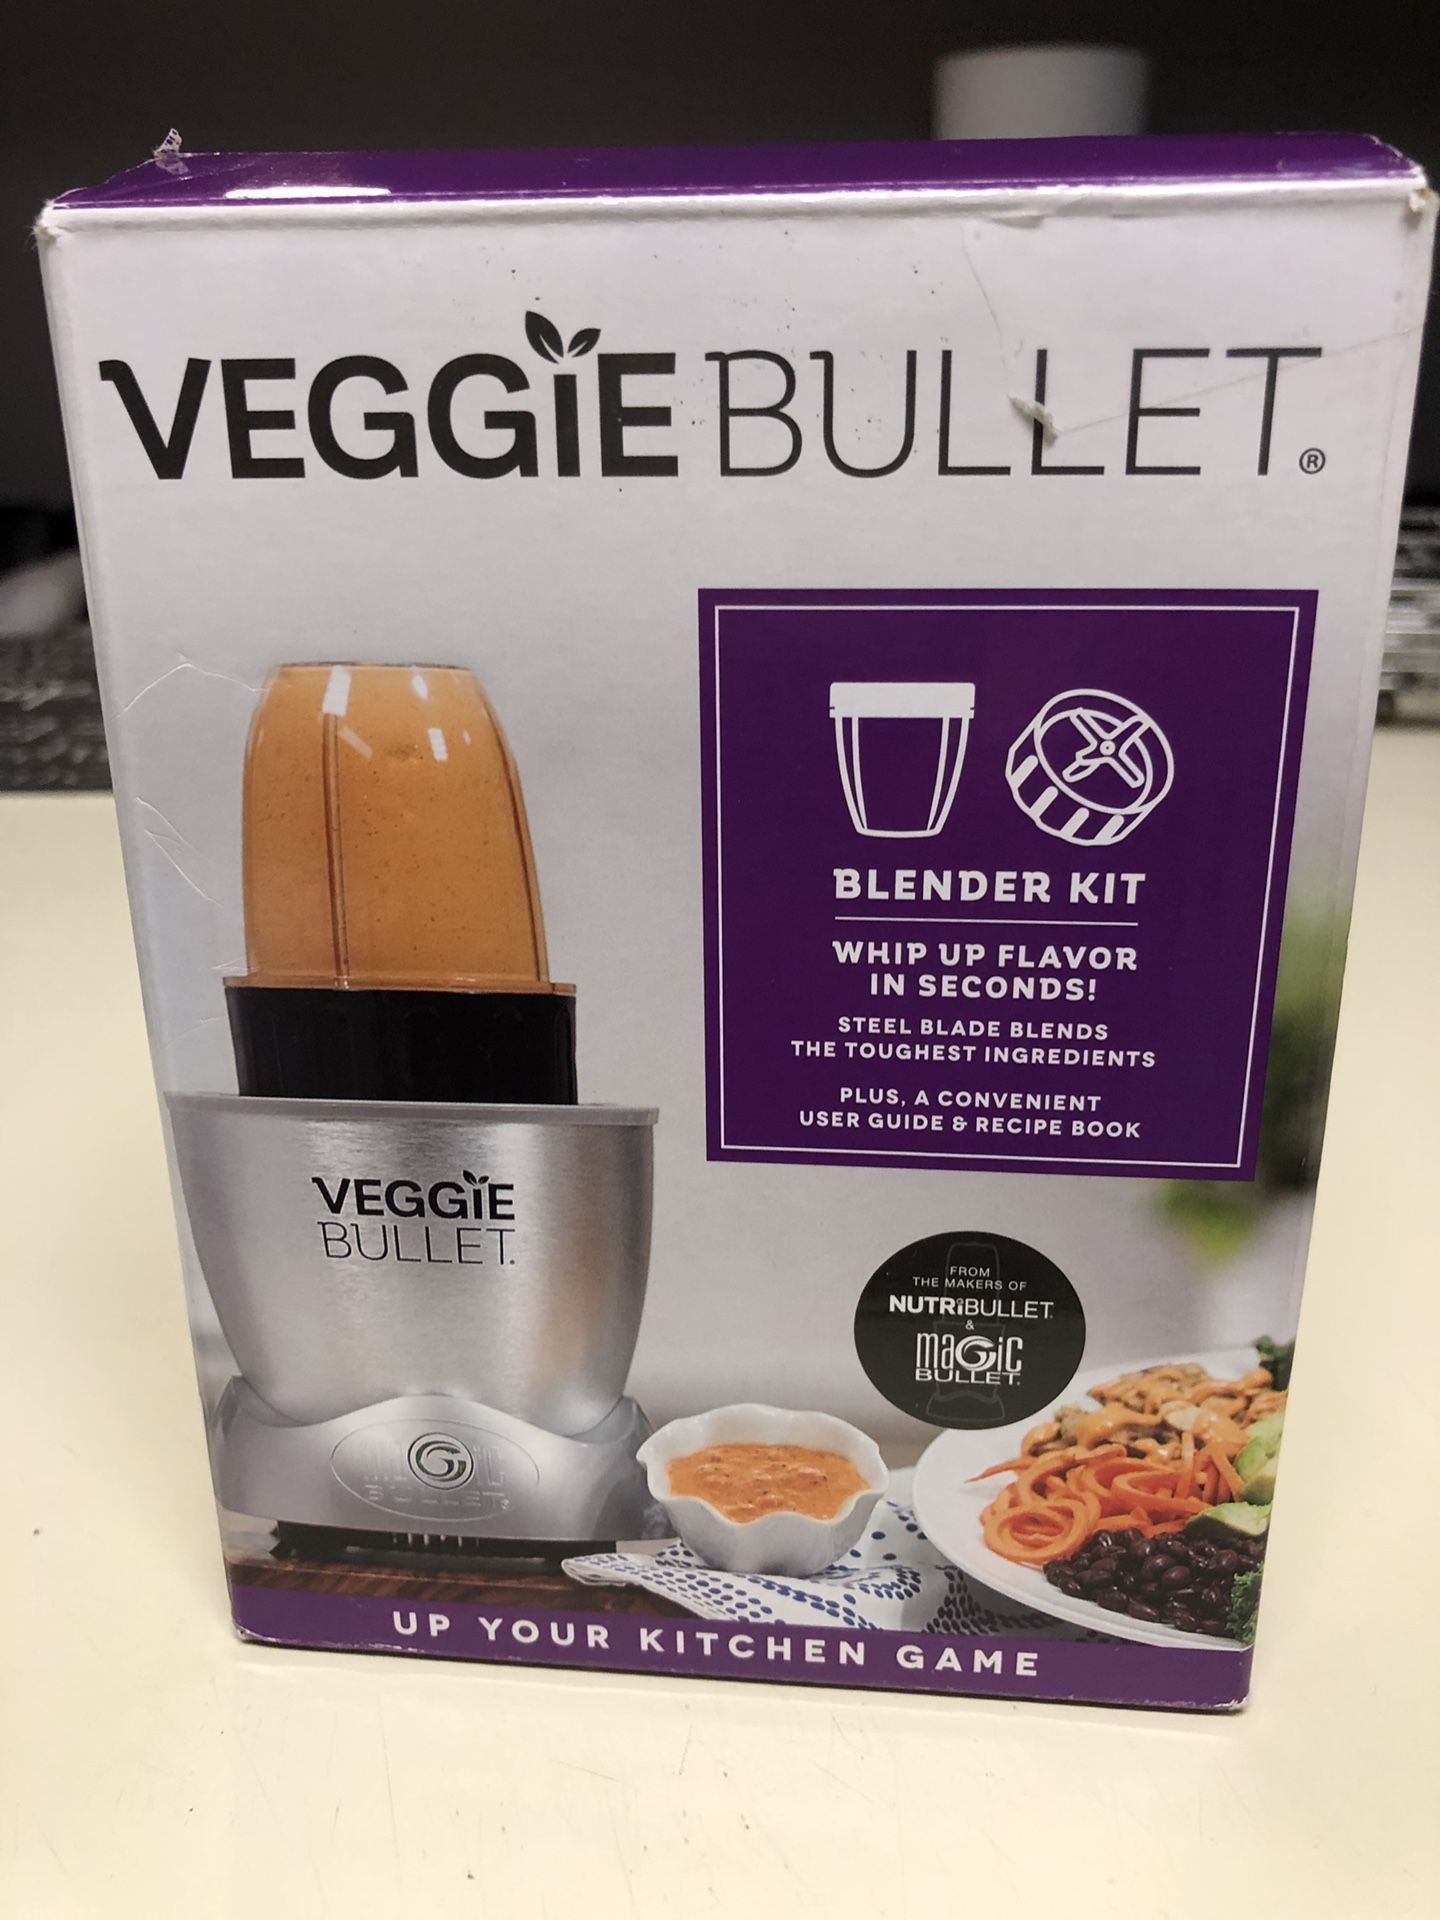 Veggie bullet blender kit